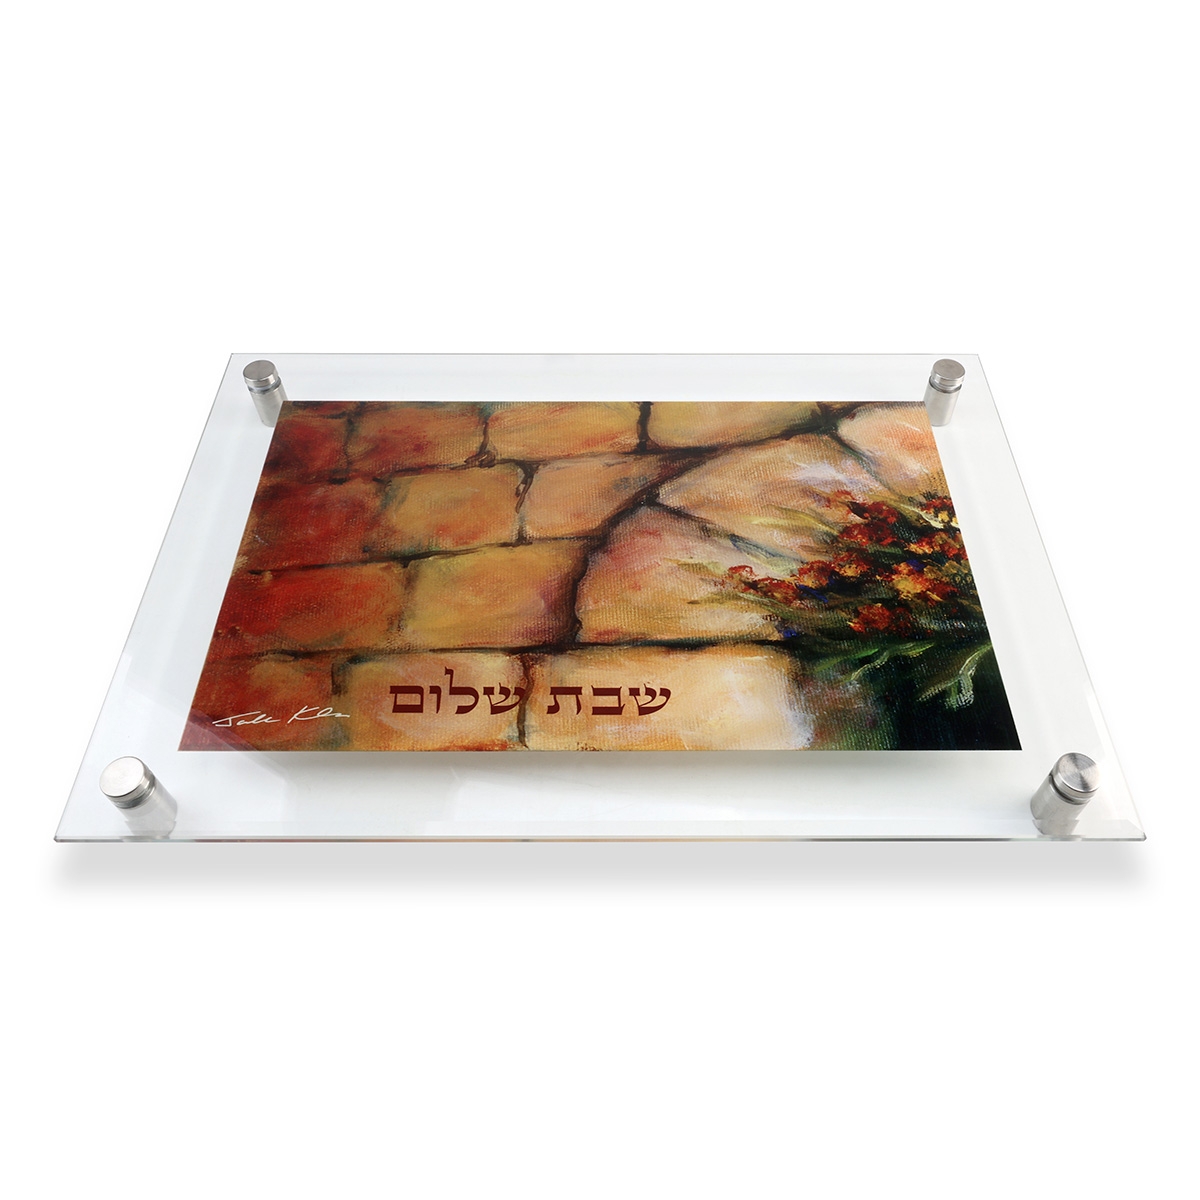 Jordana Klein "Jerusalem Arch" Large Glass Challah Tray - 1